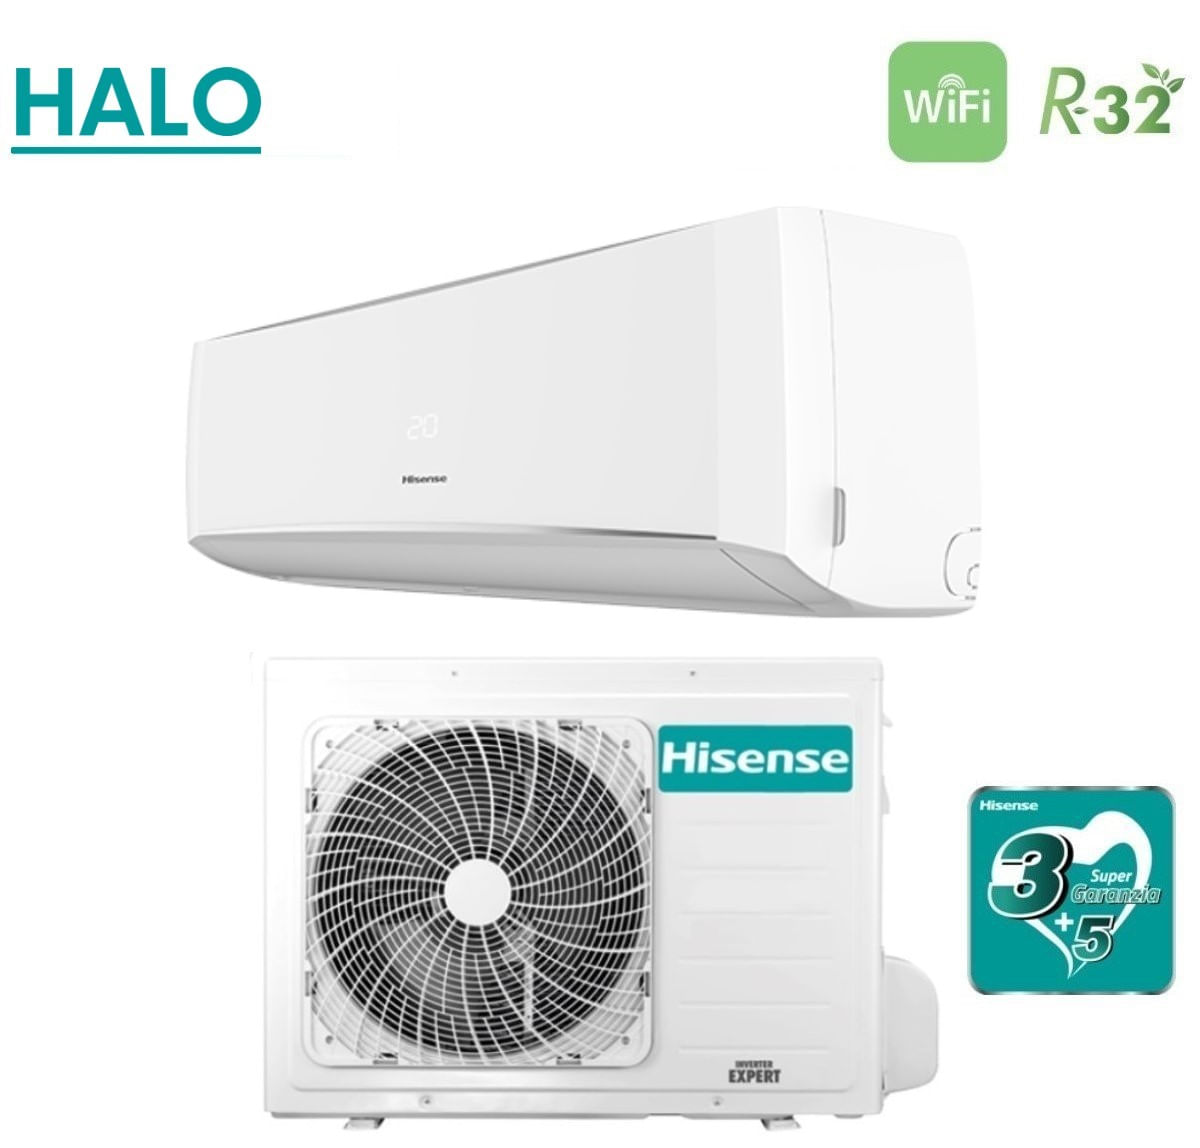 Climatizzatore Condizionatore Hisense Inverter Serie Halo 18000 Btu Cbxs181ag R 32 Wi Fi 6703